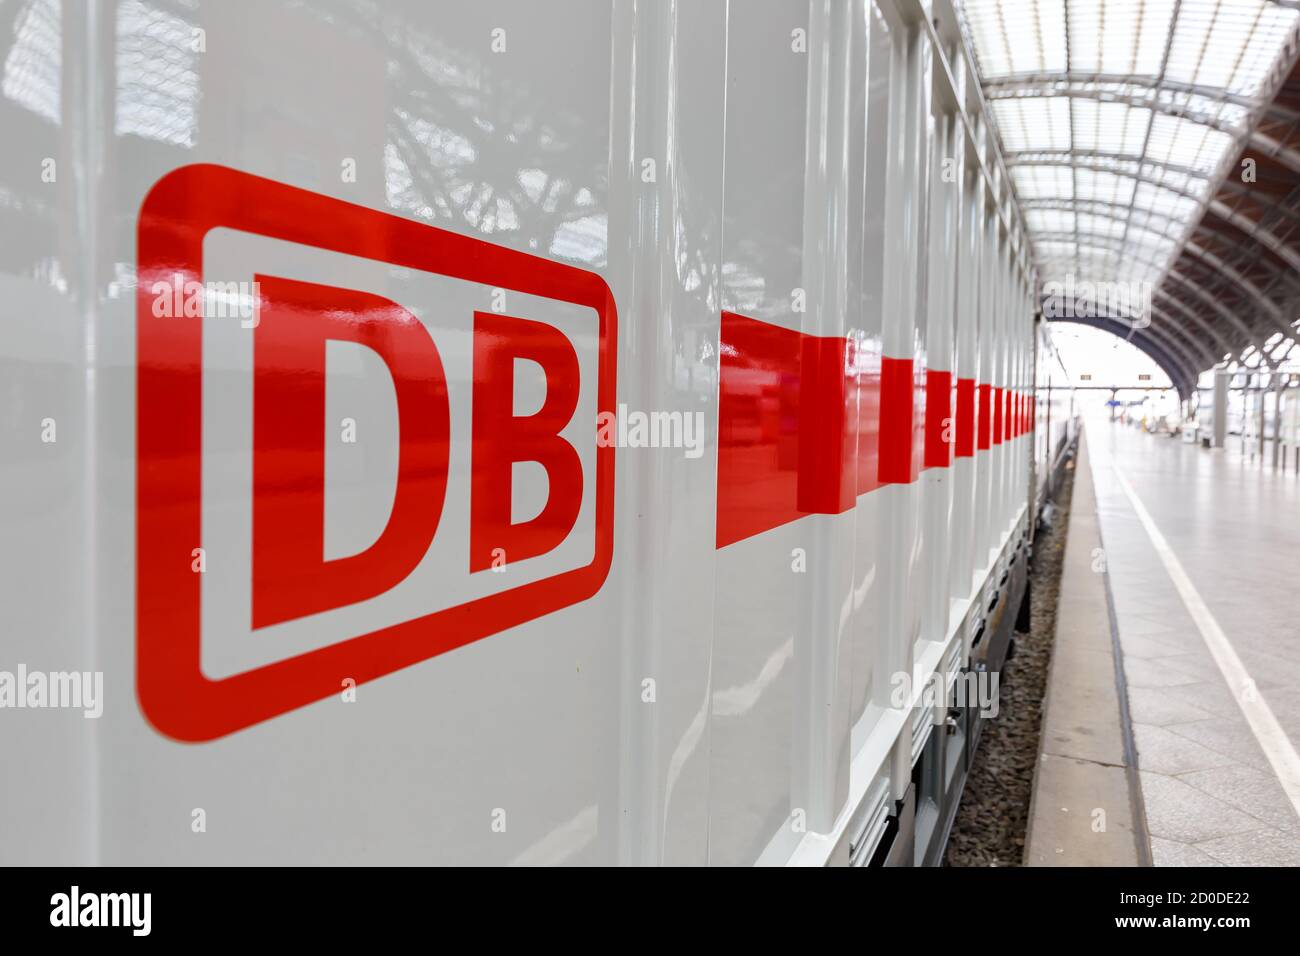 Leipzig, Alemania - 19 de agosto de 2020: DB logo Deutsche Bahn Ferrocarriles alemanes IC2 Intercity 2 tren en la estación principal de ferrocarril de Leipzig en Alemania. Foto de stock